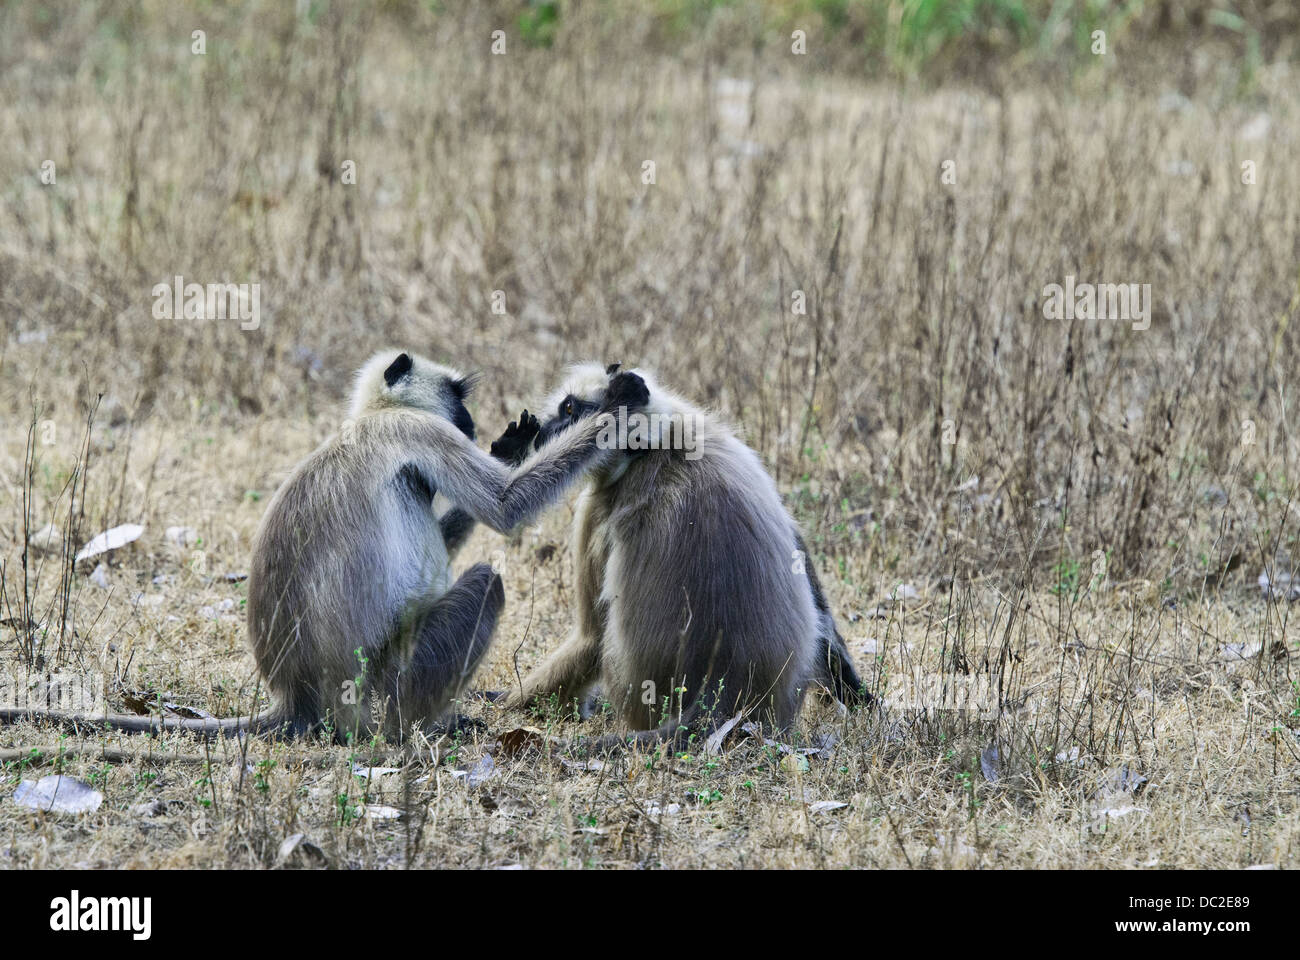 Les singes Langur à face noire engagés dans le toilettage social dans Bandhavgarh National Park, Inde Banque D'Images